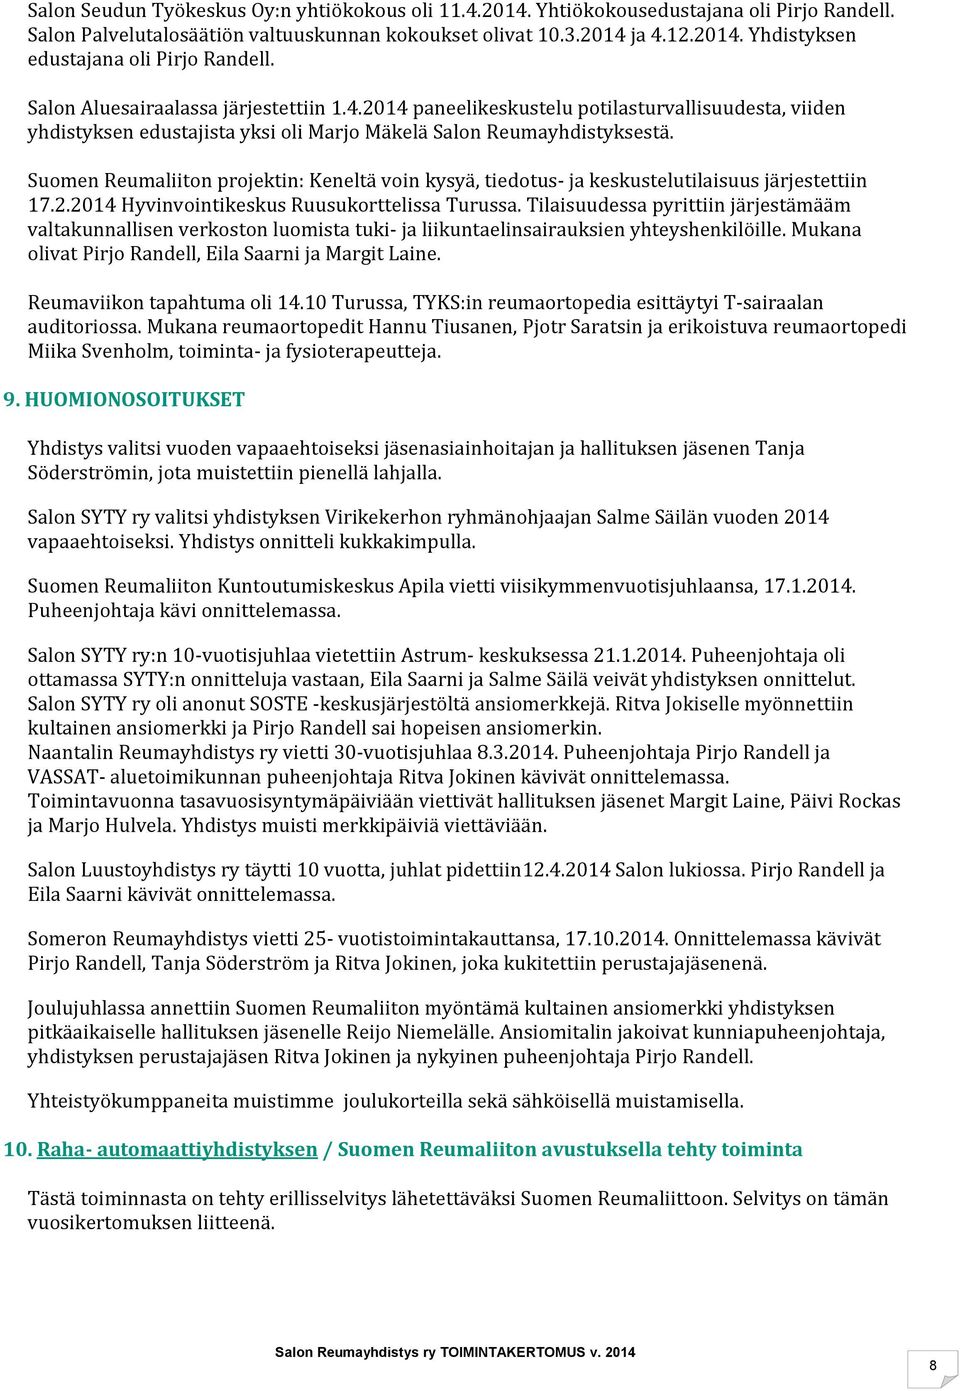 Suomen Reumaliiton projektin: Keneltä voin kysyä, tiedotus- ja keskustelutilaisuus järjestettiin 17.2.2014 Hyvinvointikeskus Ruusukorttelissa Turussa.